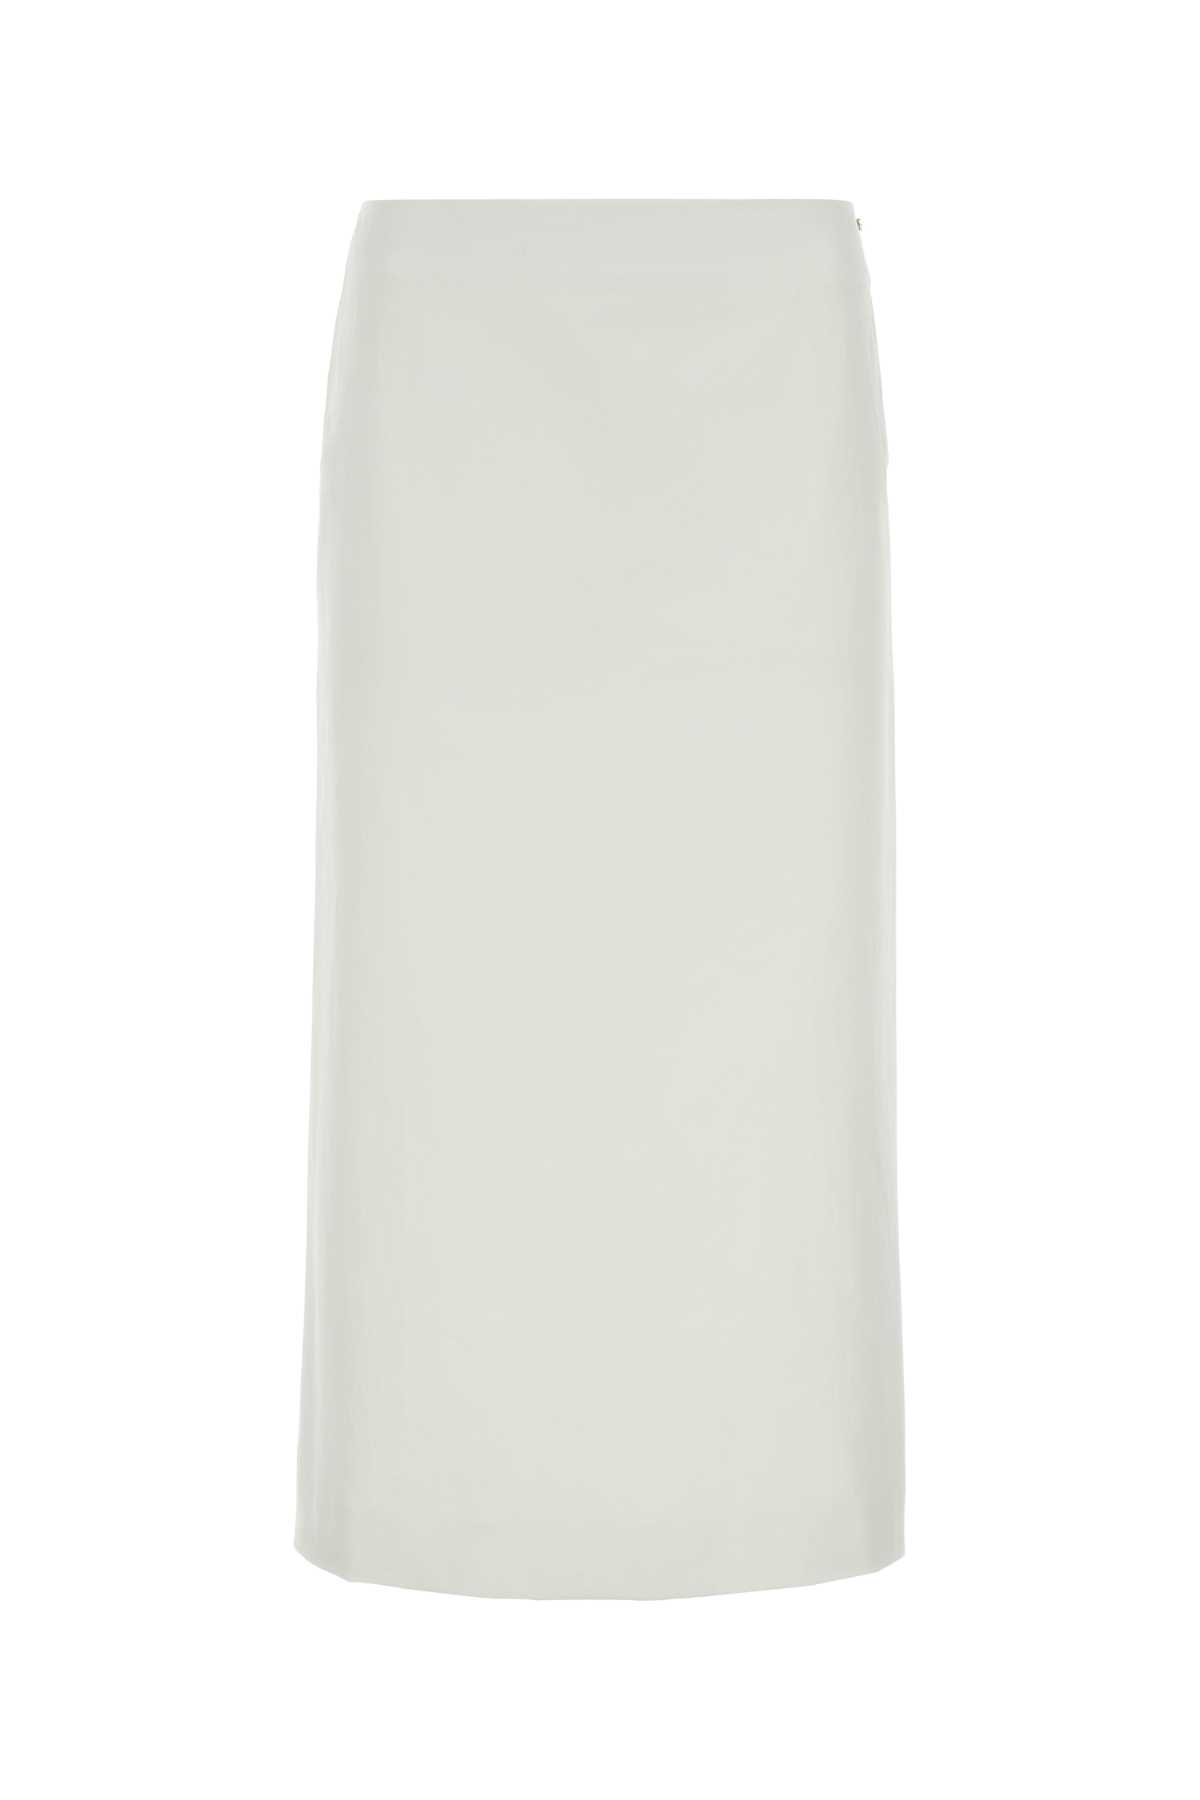 White Satin Cellula Skirt